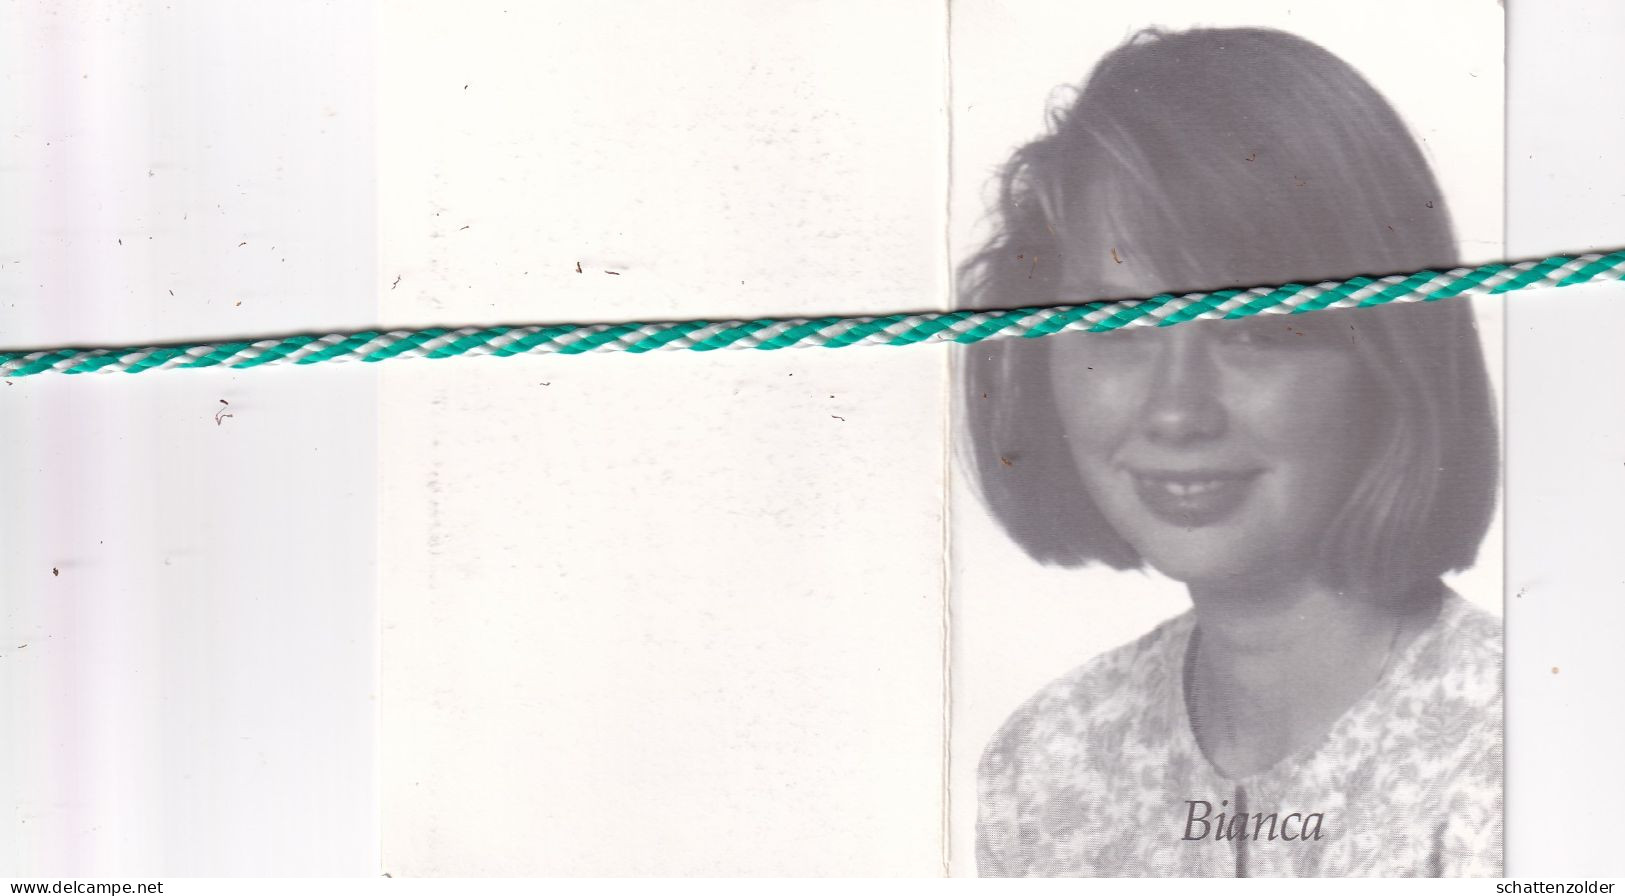 Bianca Blieck-Demeyer, Menen 1974, Namen 1994. Foto - Overlijden